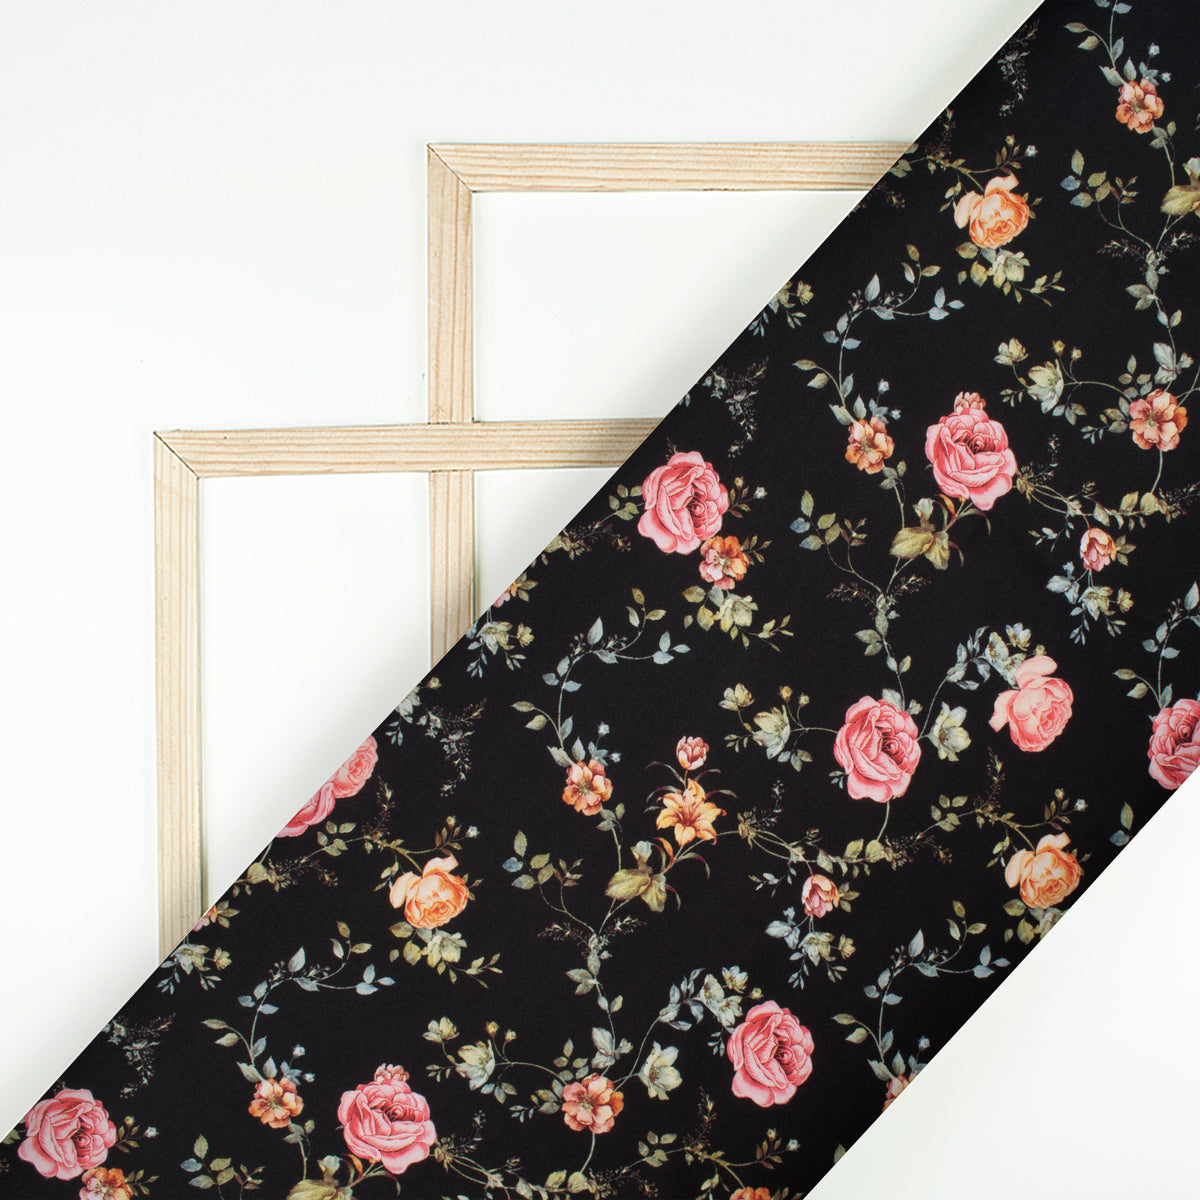 Top Selling Black Floral Digital Print Japan Satin Fabric